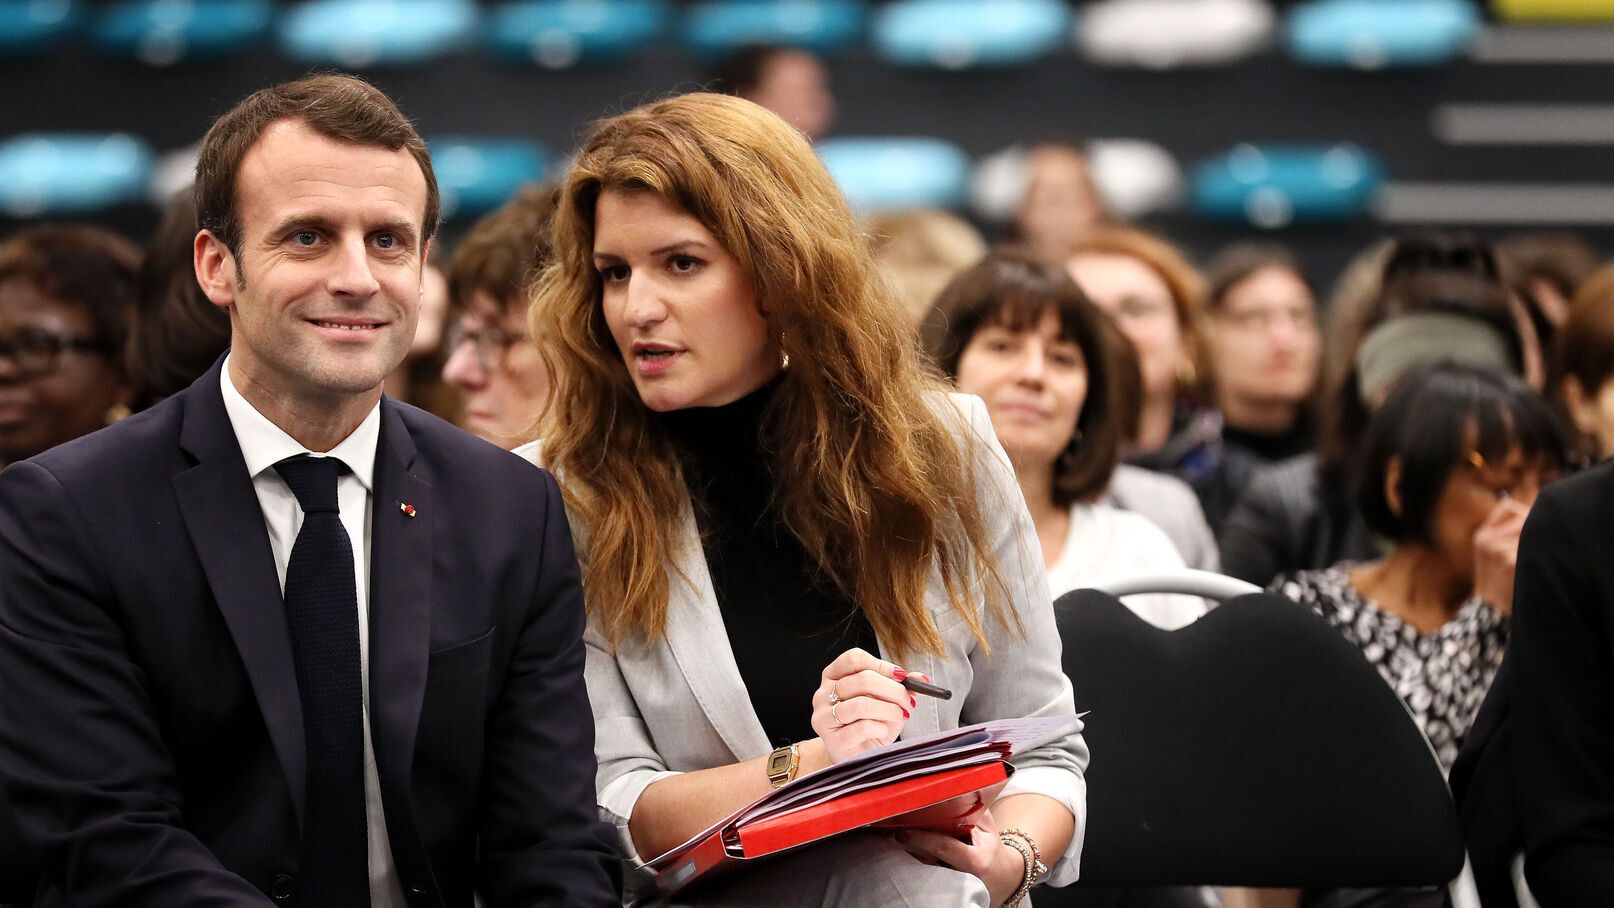 Marlène Schiappa dans Playboy : découvrez la réaction d’Emmanuel Macron